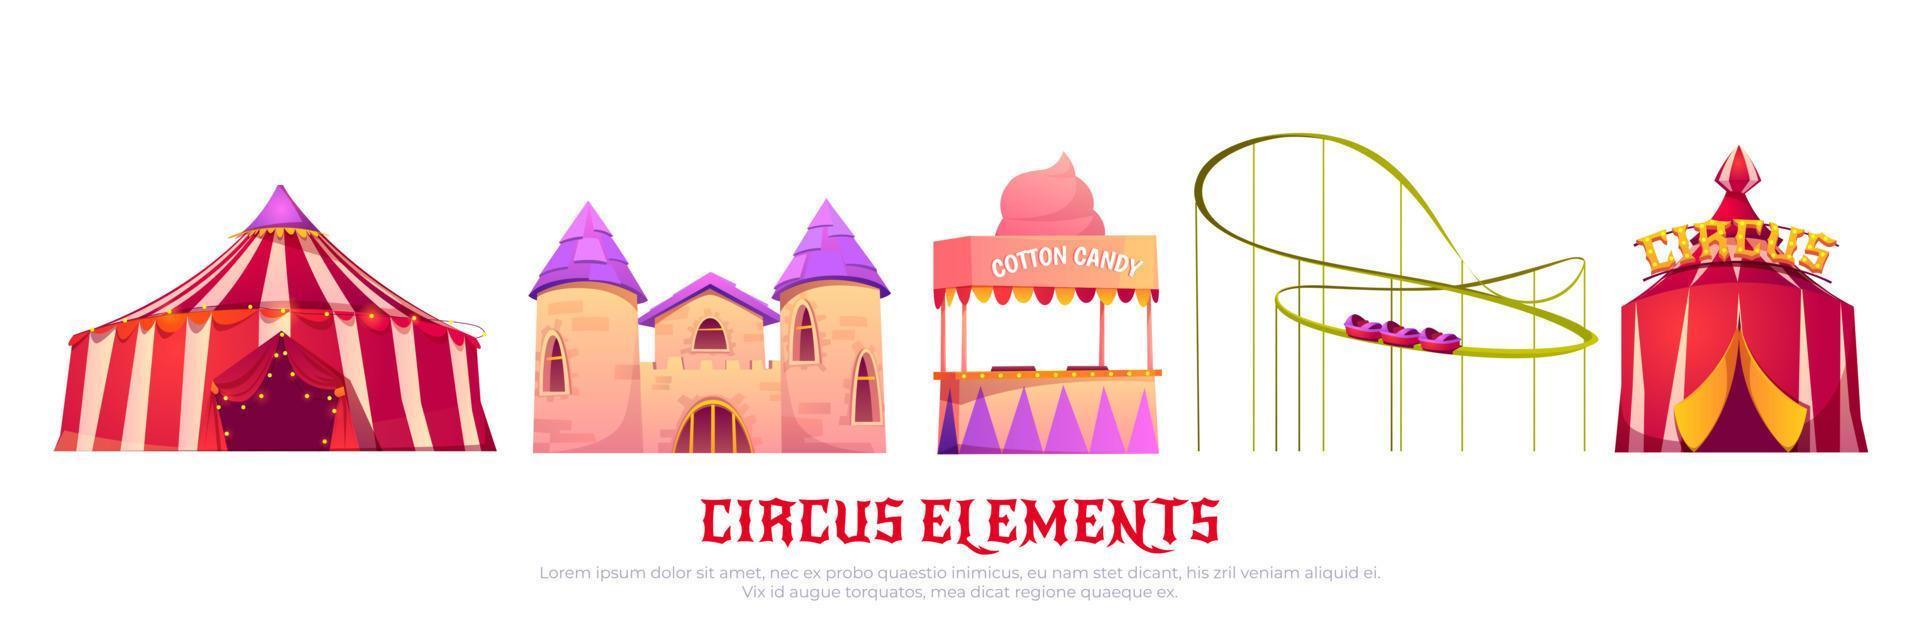 carnaval parque de diversões com circo e rolo montanha-russa vetor